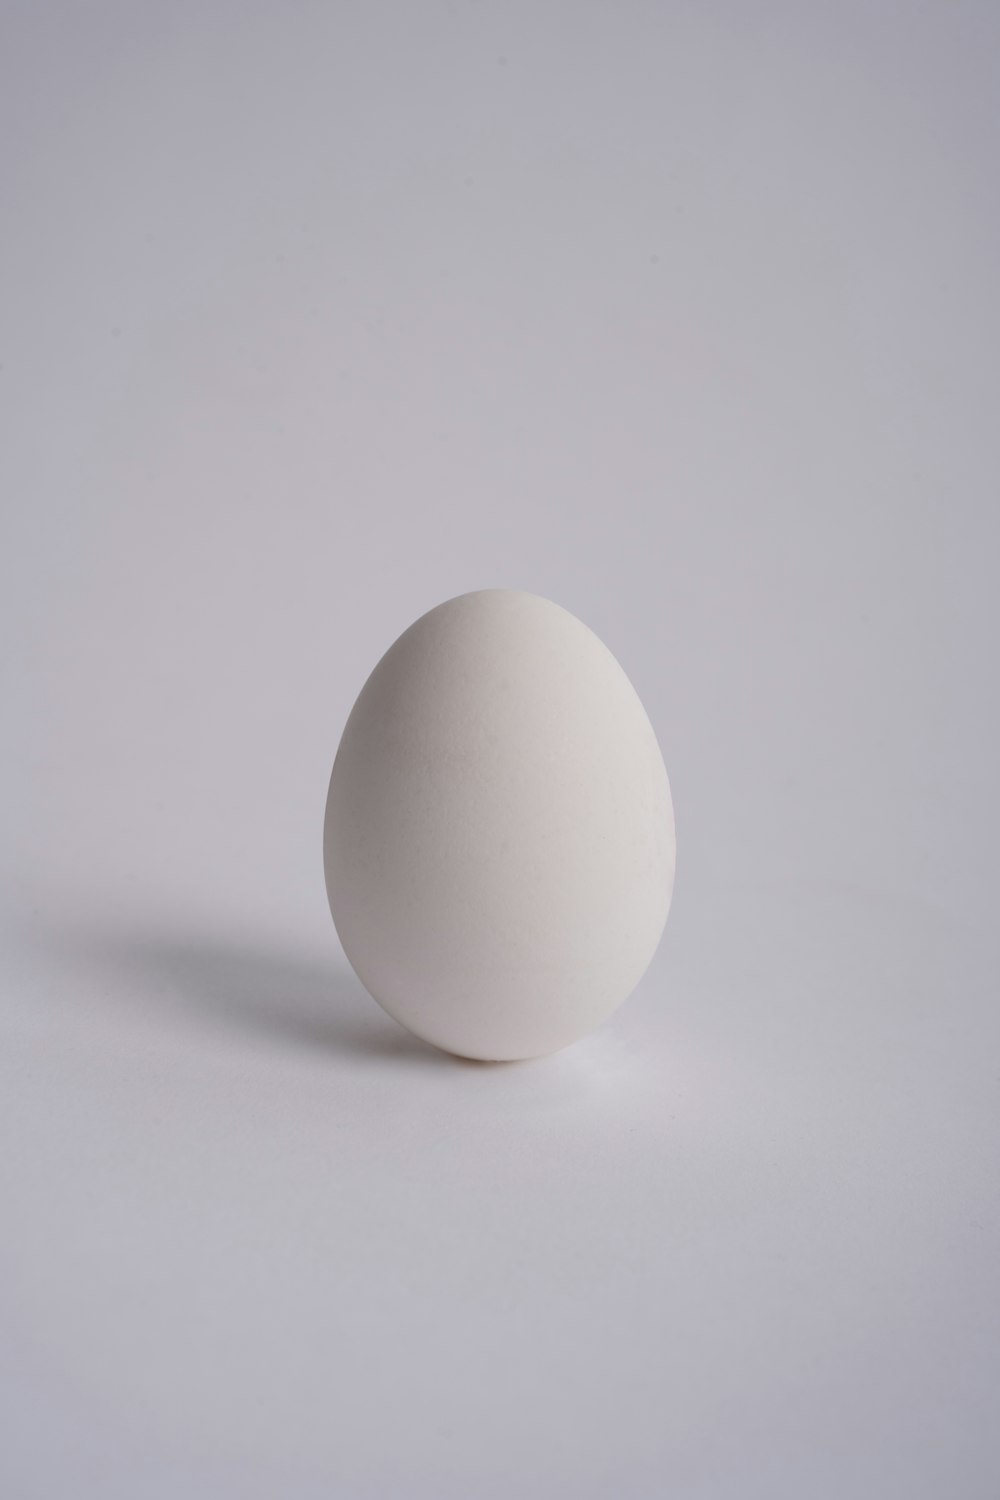 2 weiße Eier auf weißer Oberfläche